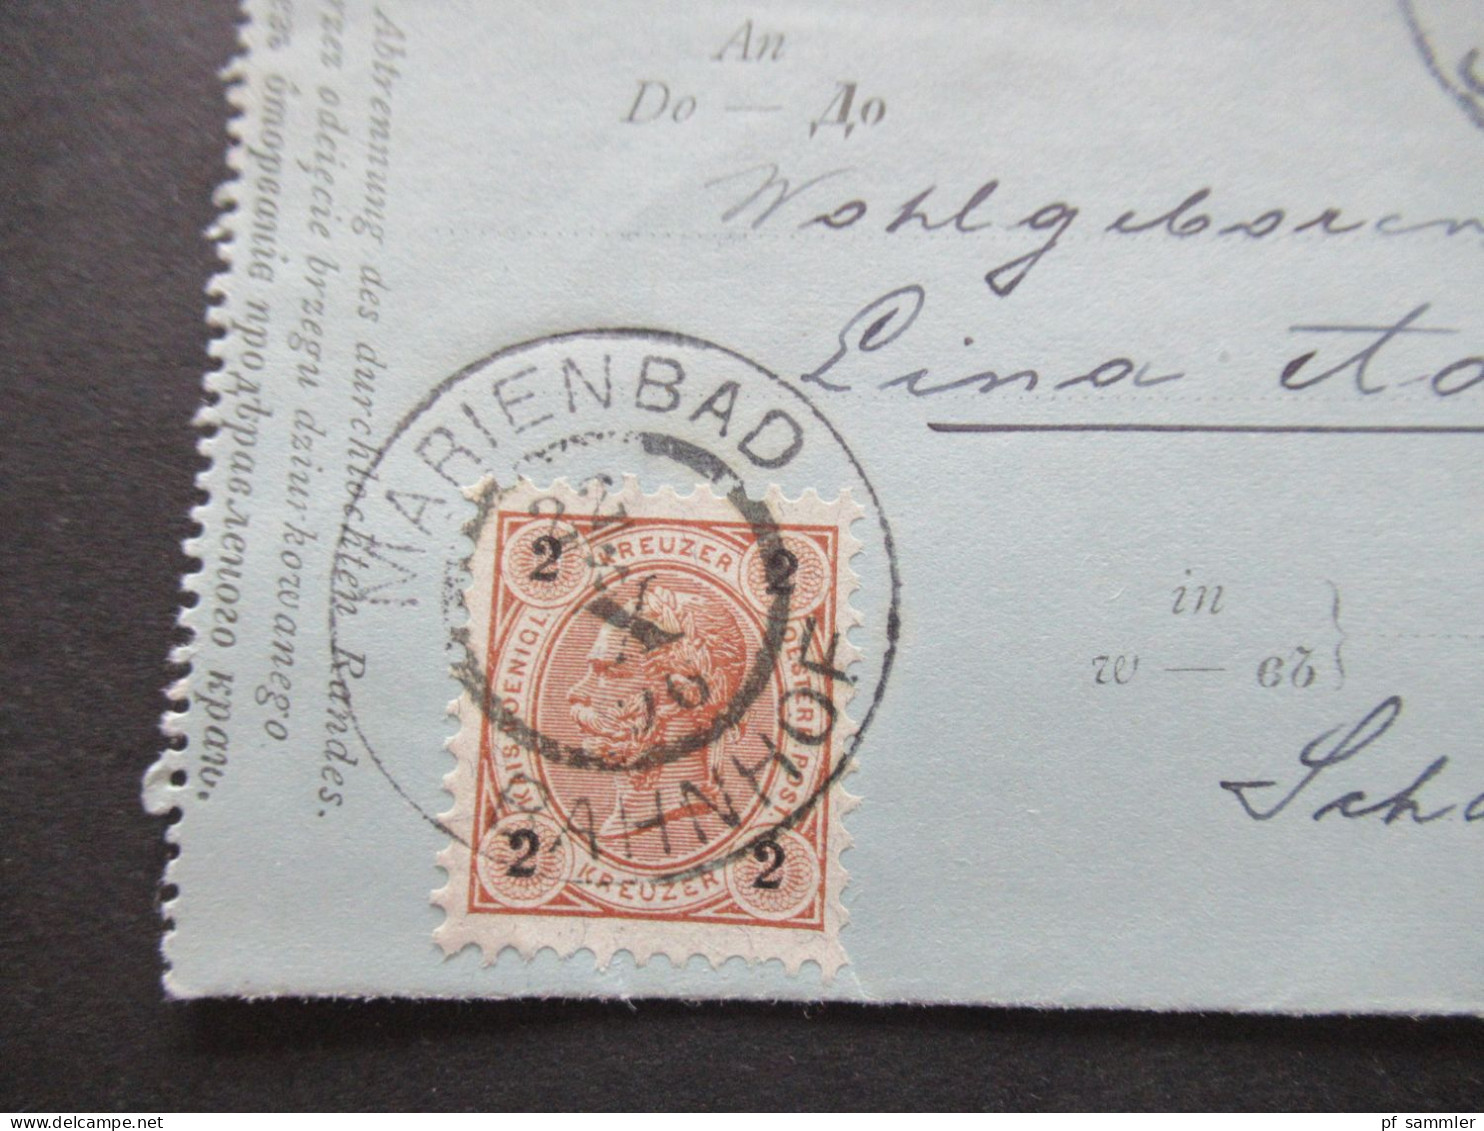 Österreich 1896 Kartenbrief K 19 (Poln.-Ruth.) Mit Zusatzfrankatur 2 Kreuzer Großer K2 Marienbad Bahnhof - Eger - Letter-Cards